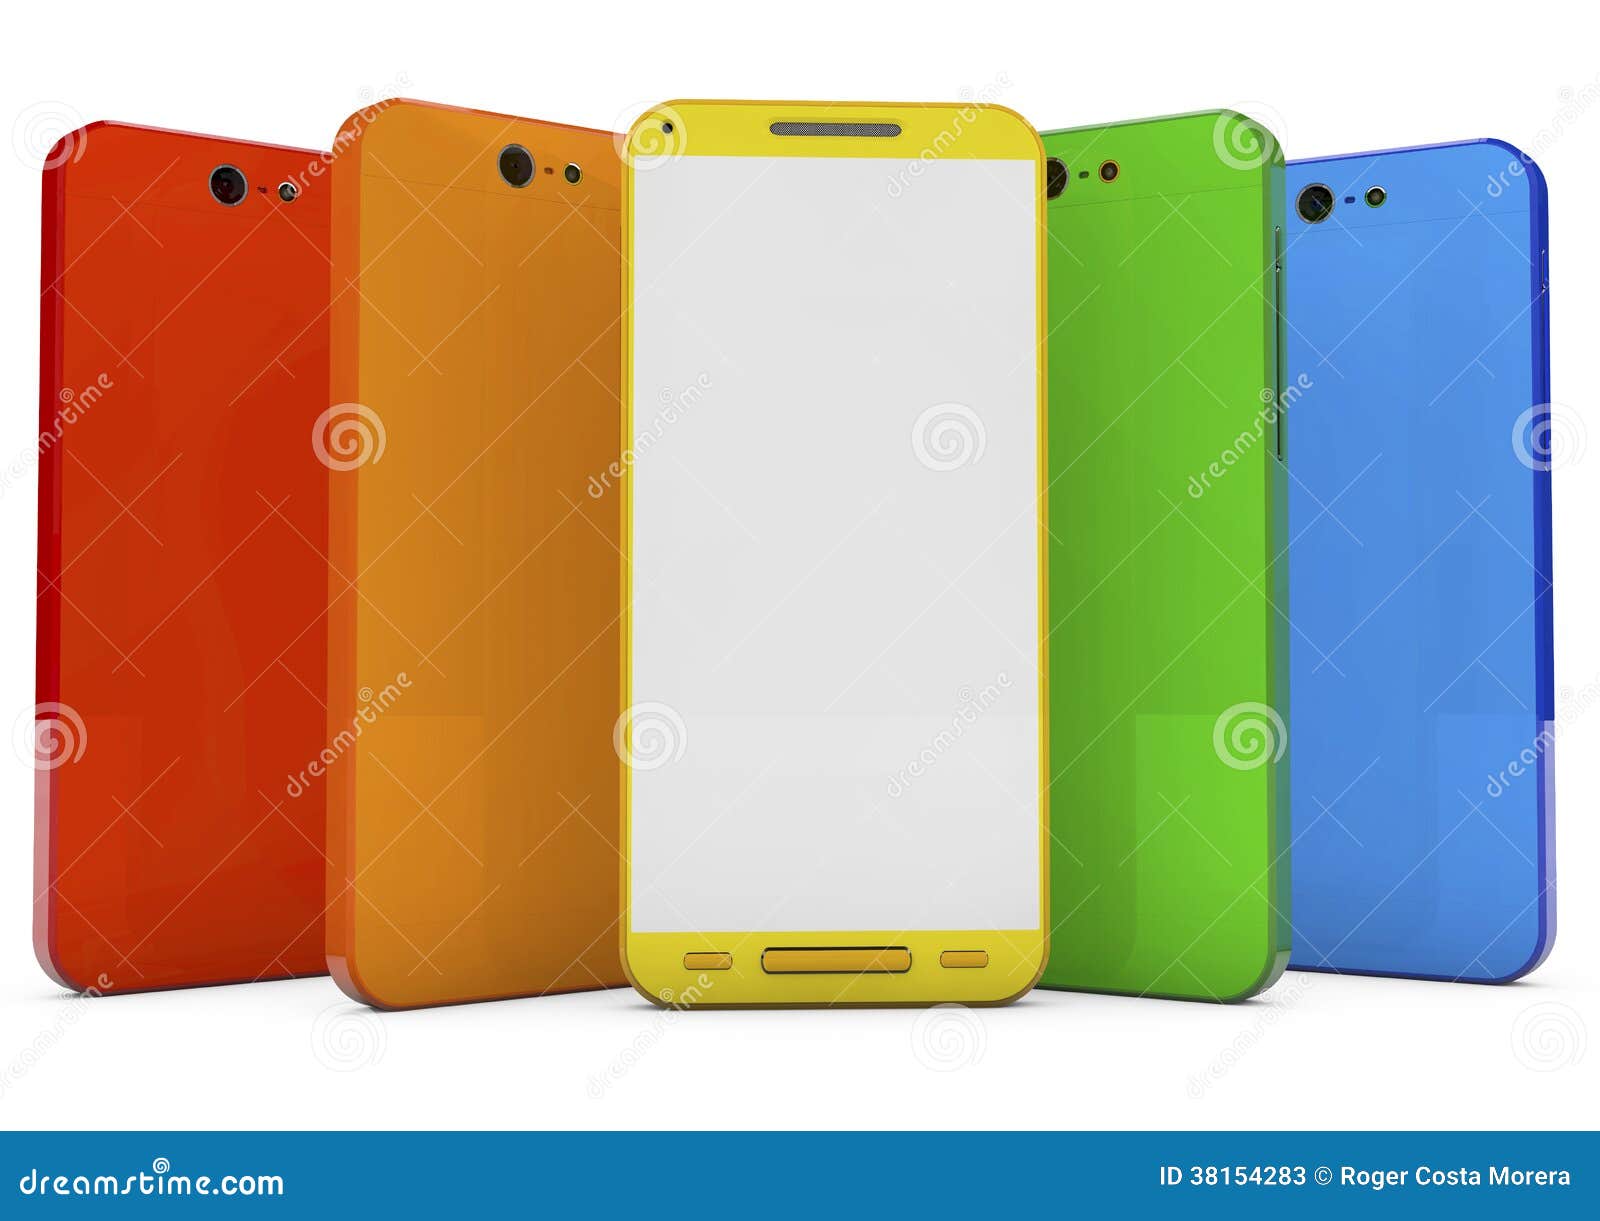 Groupe de smartphones d'écran tactile avec l'interface colorée et l'écran vide, image 3d.